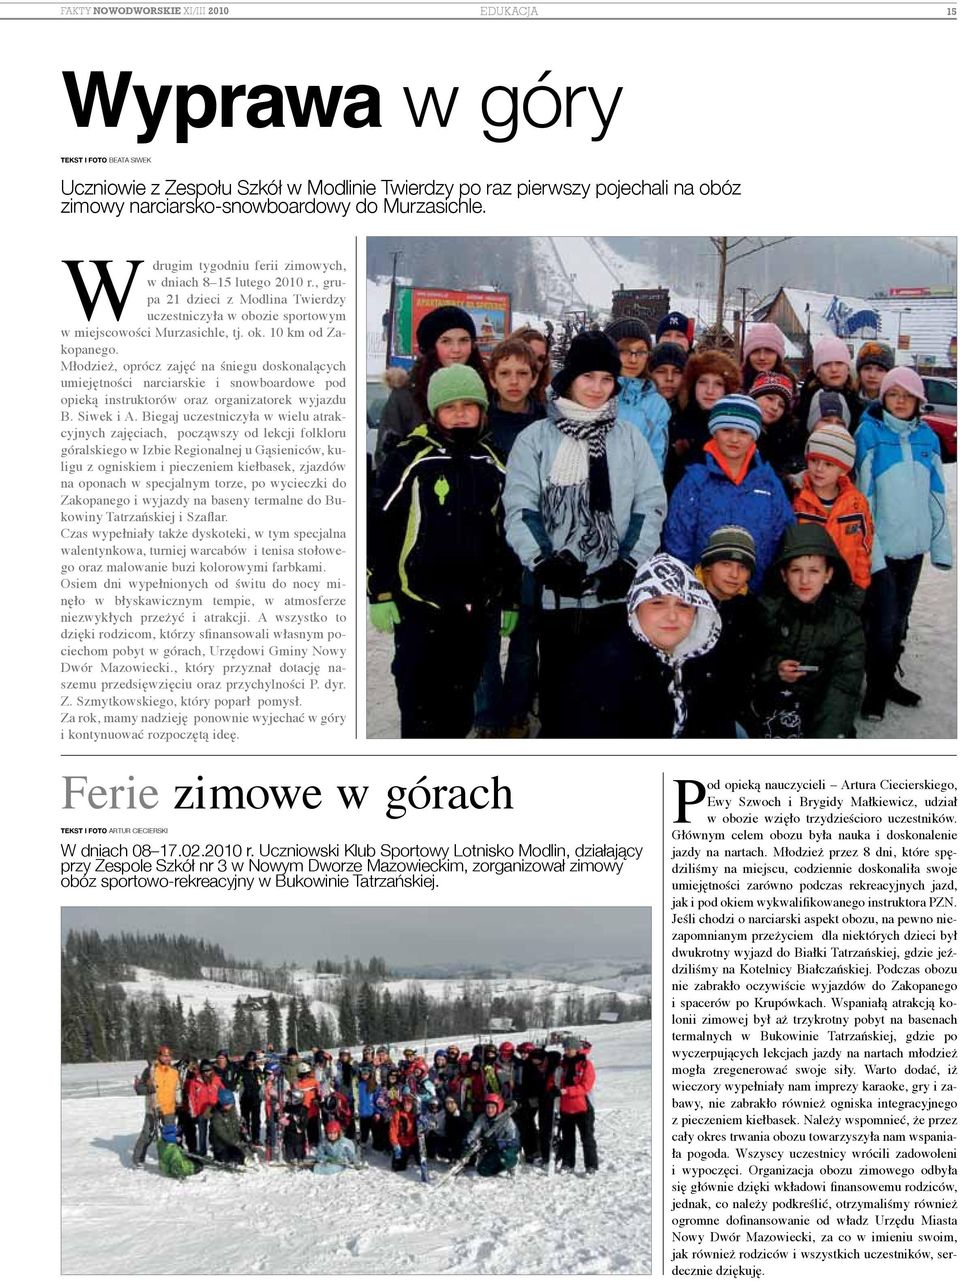 Młodzież, oprócz zajęć na śniegu doskonalących umiejętności narciarskie i snowboardowe pod opieką instruktorów oraz organizatorek wyjazdu B. Siwek i A.